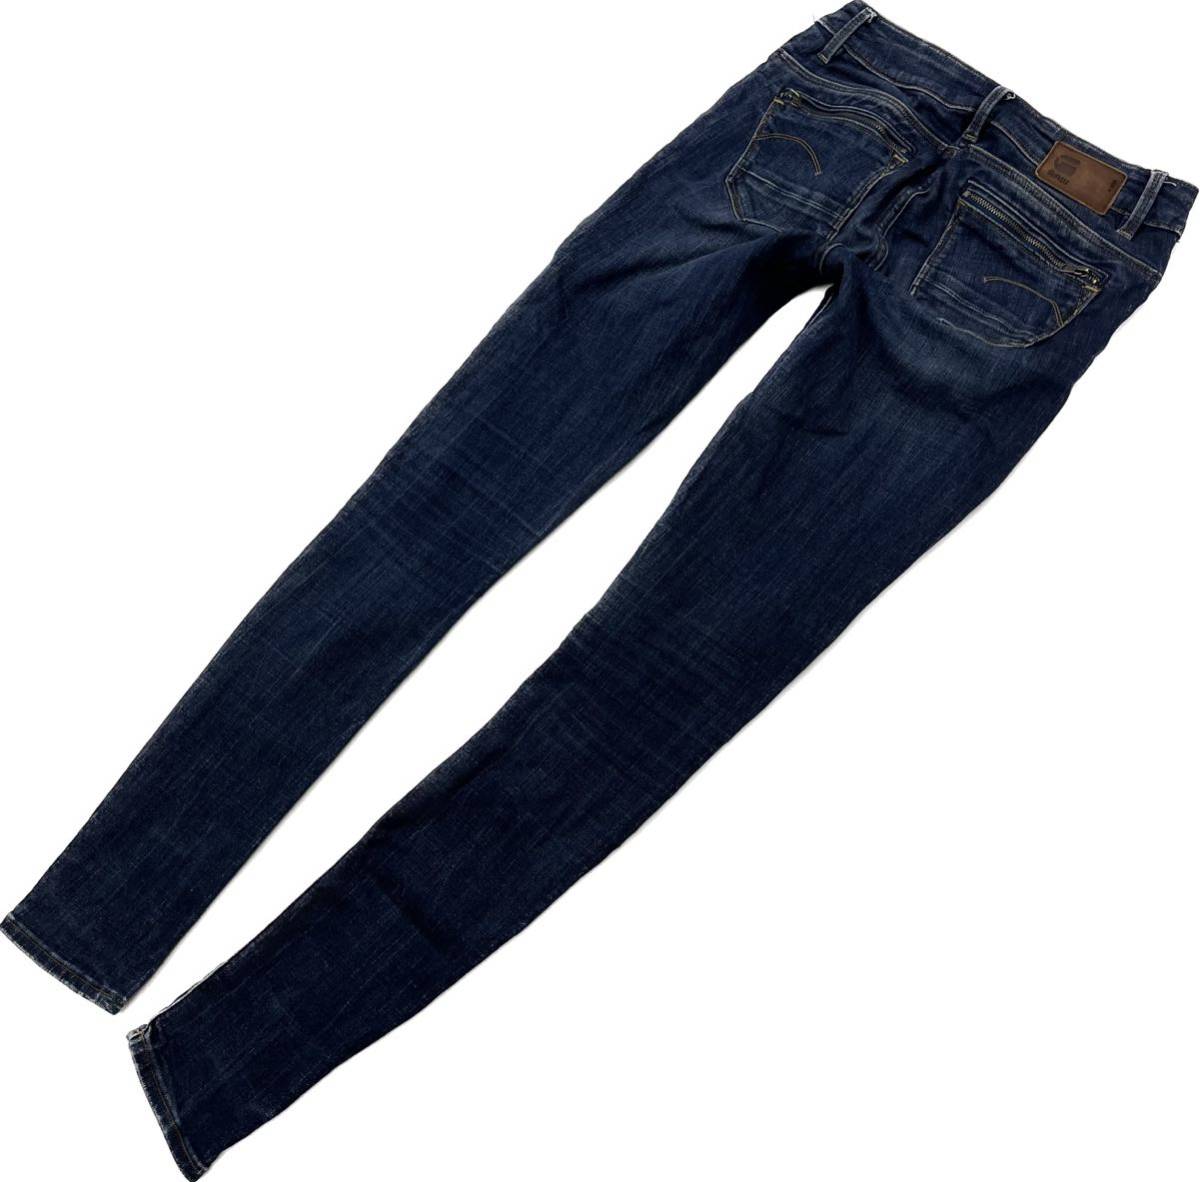 G-STAR RAW * stretch jeans skinny denim pants blue indigo W25 lady's standard casual ji- Star low #Ja6705